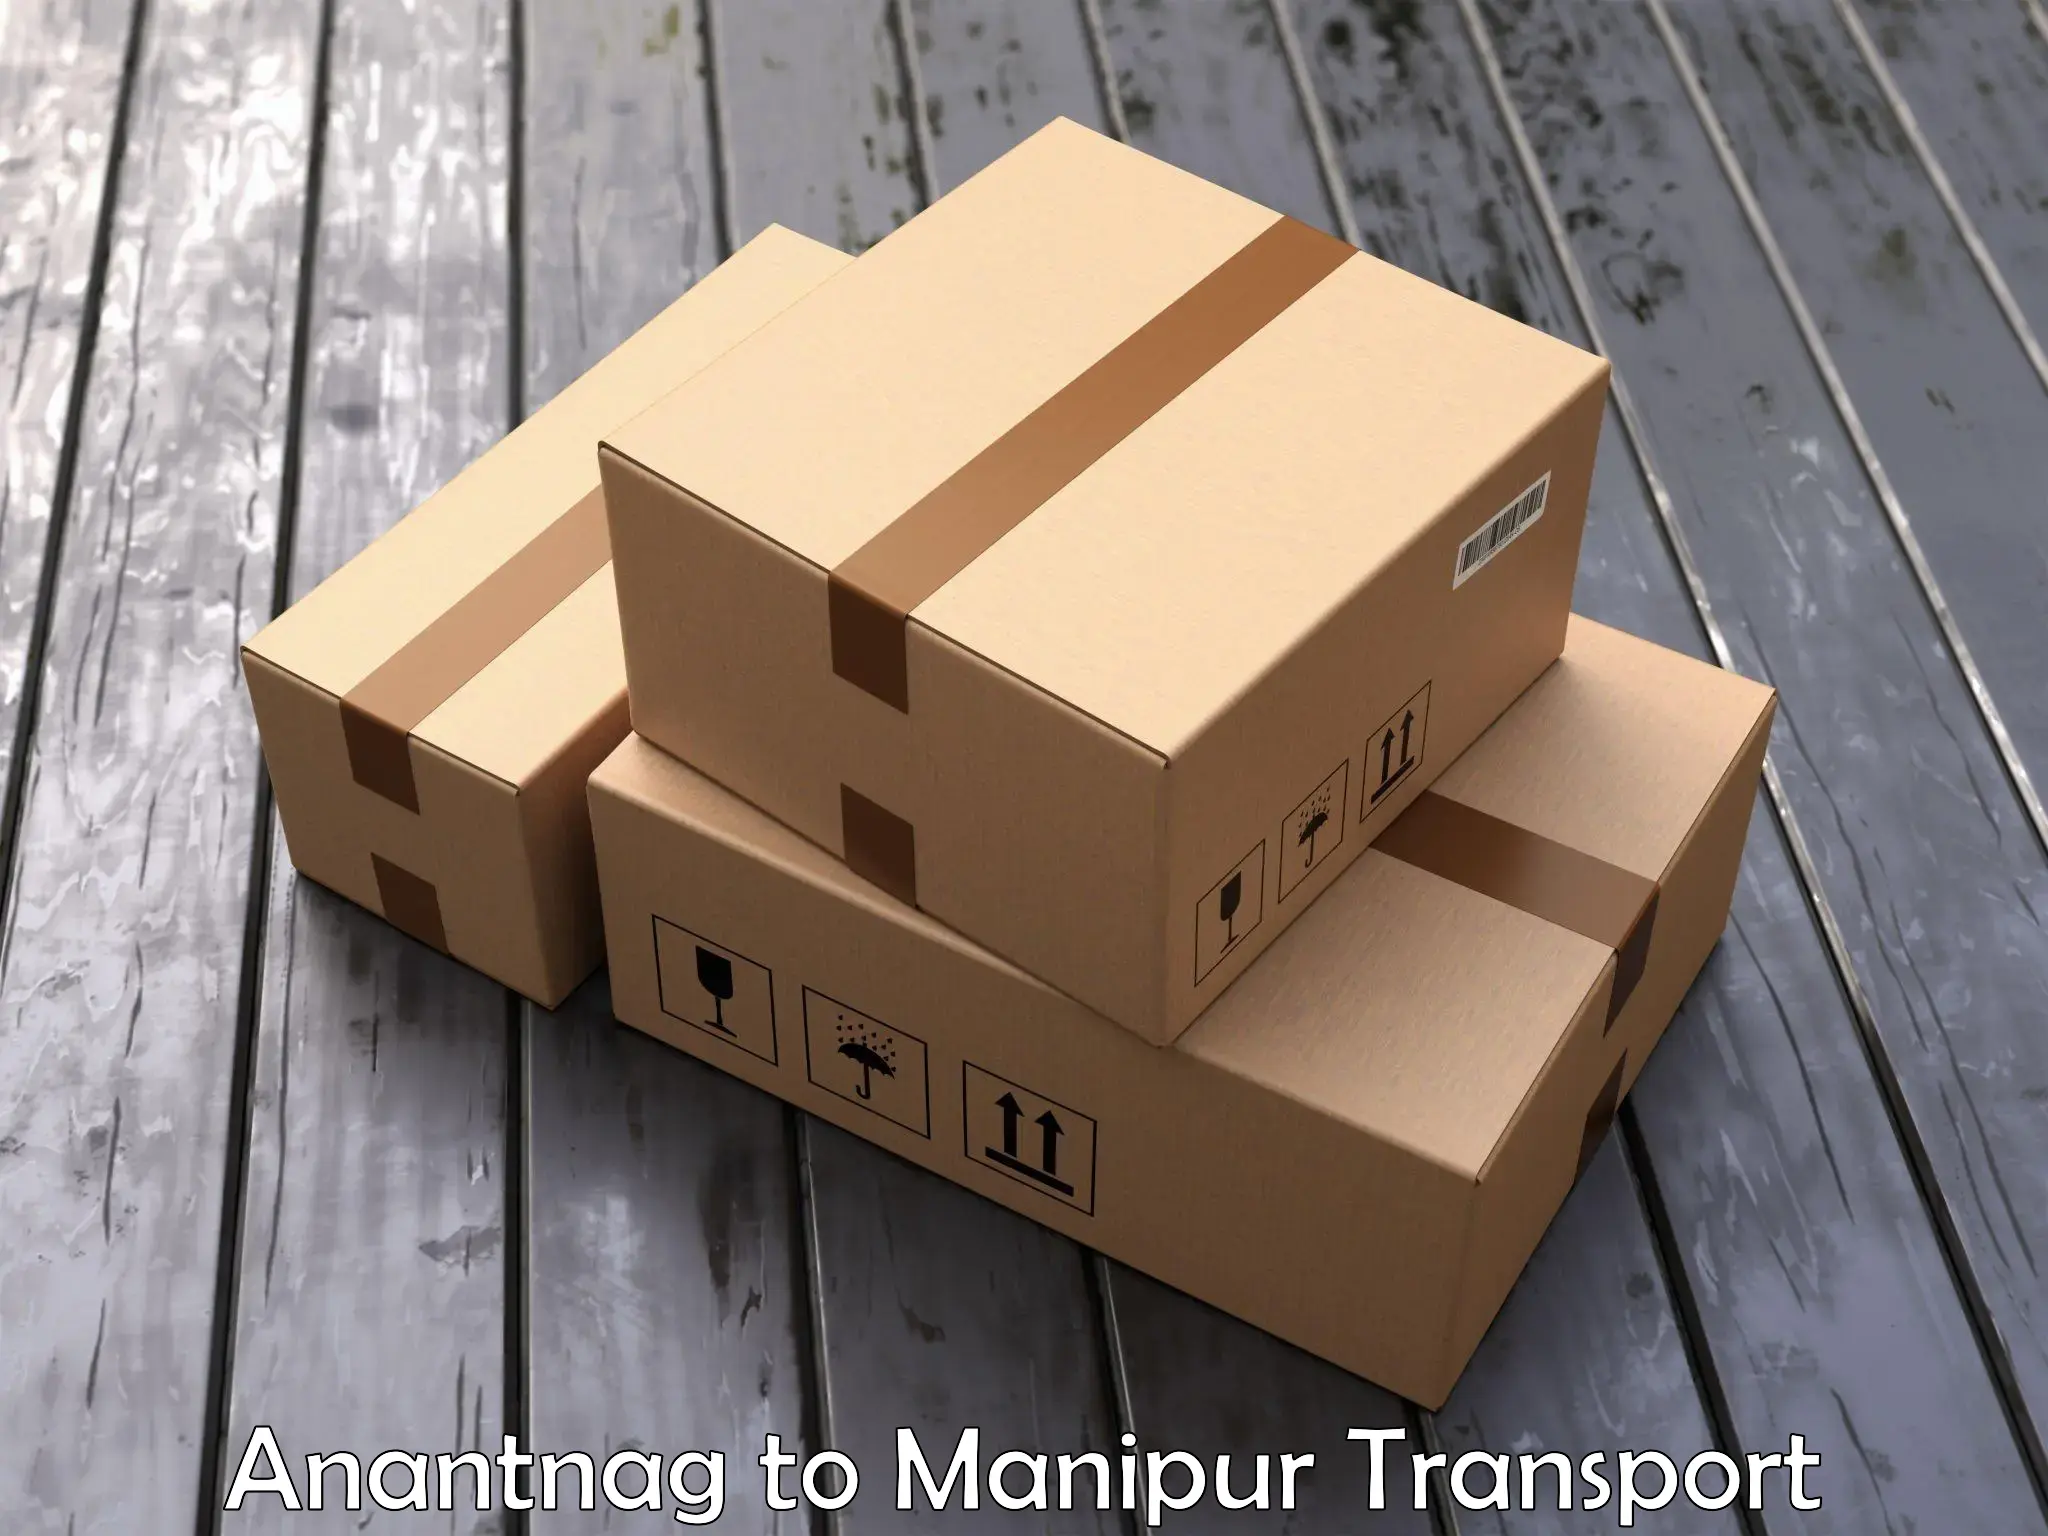 Online transport service Anantnag to Manipur